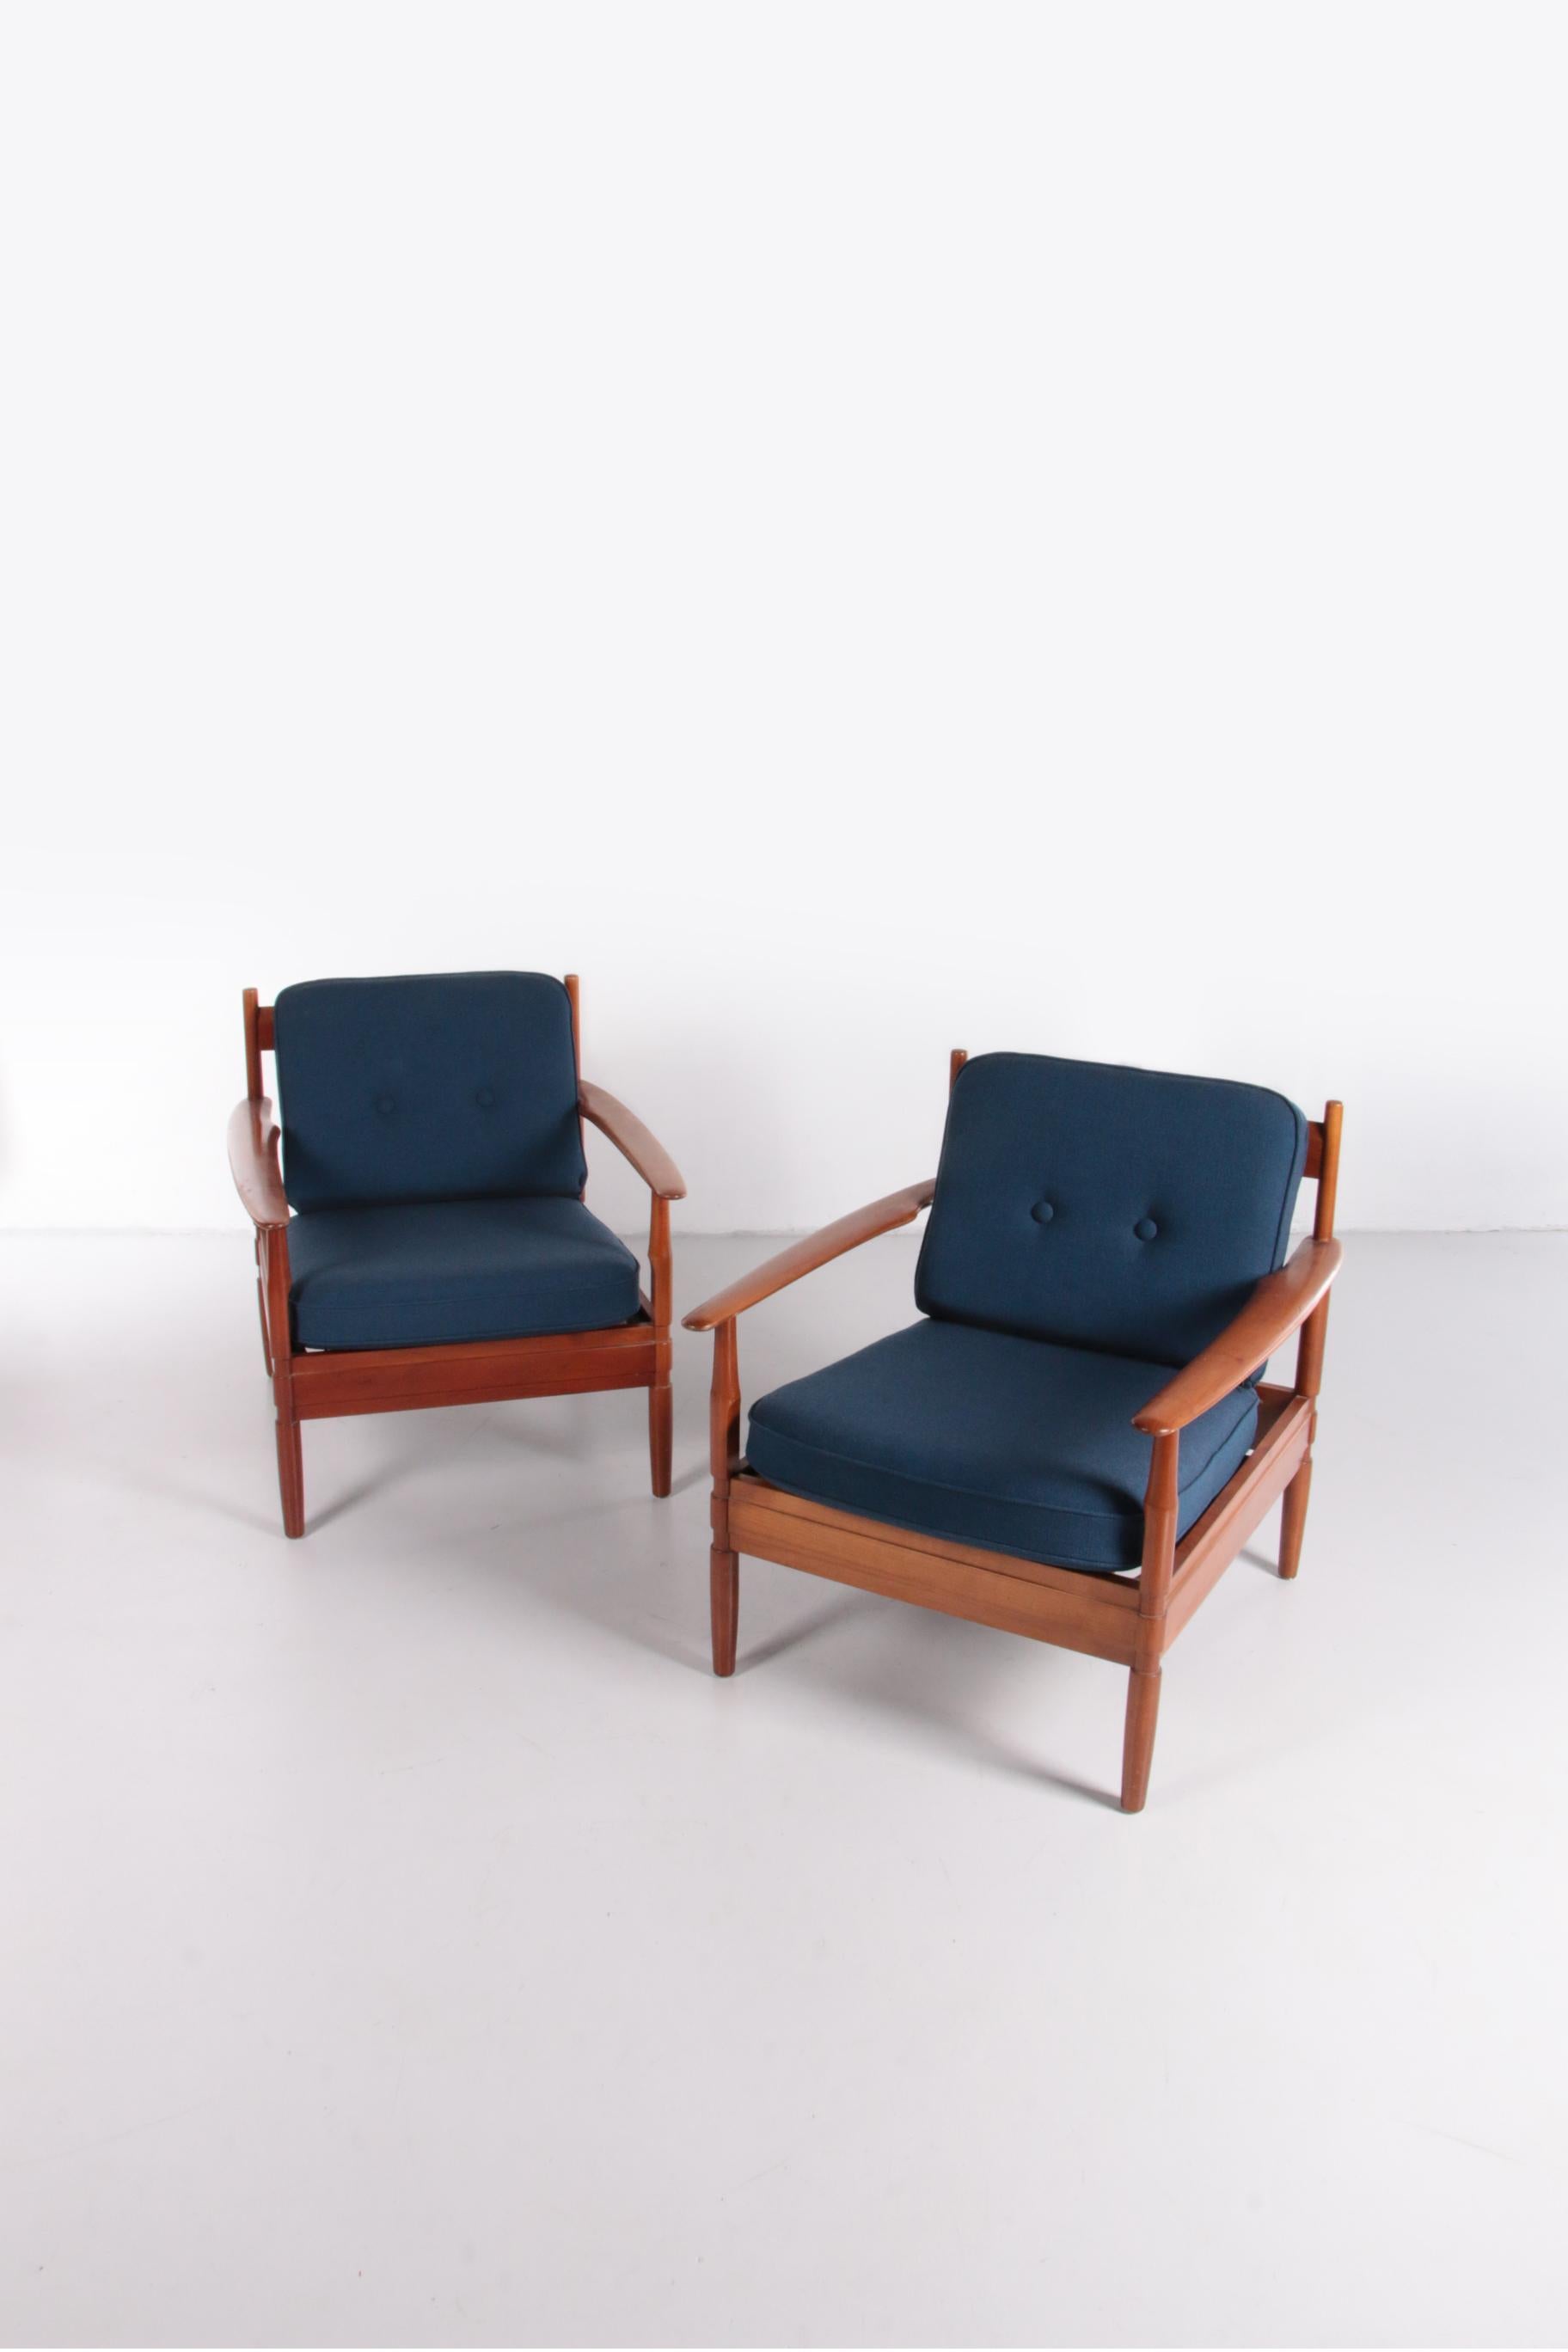 Vintage set de fauteuils Grete Jalk fait par France and Son,1960 Danemark.

Magnifiques fauteuils vintage en bois de teck modèle 118.

Le fauteuil a été conçu par la designer danoise Grete Jalk et produit par France and Son. Le cadre est en teck